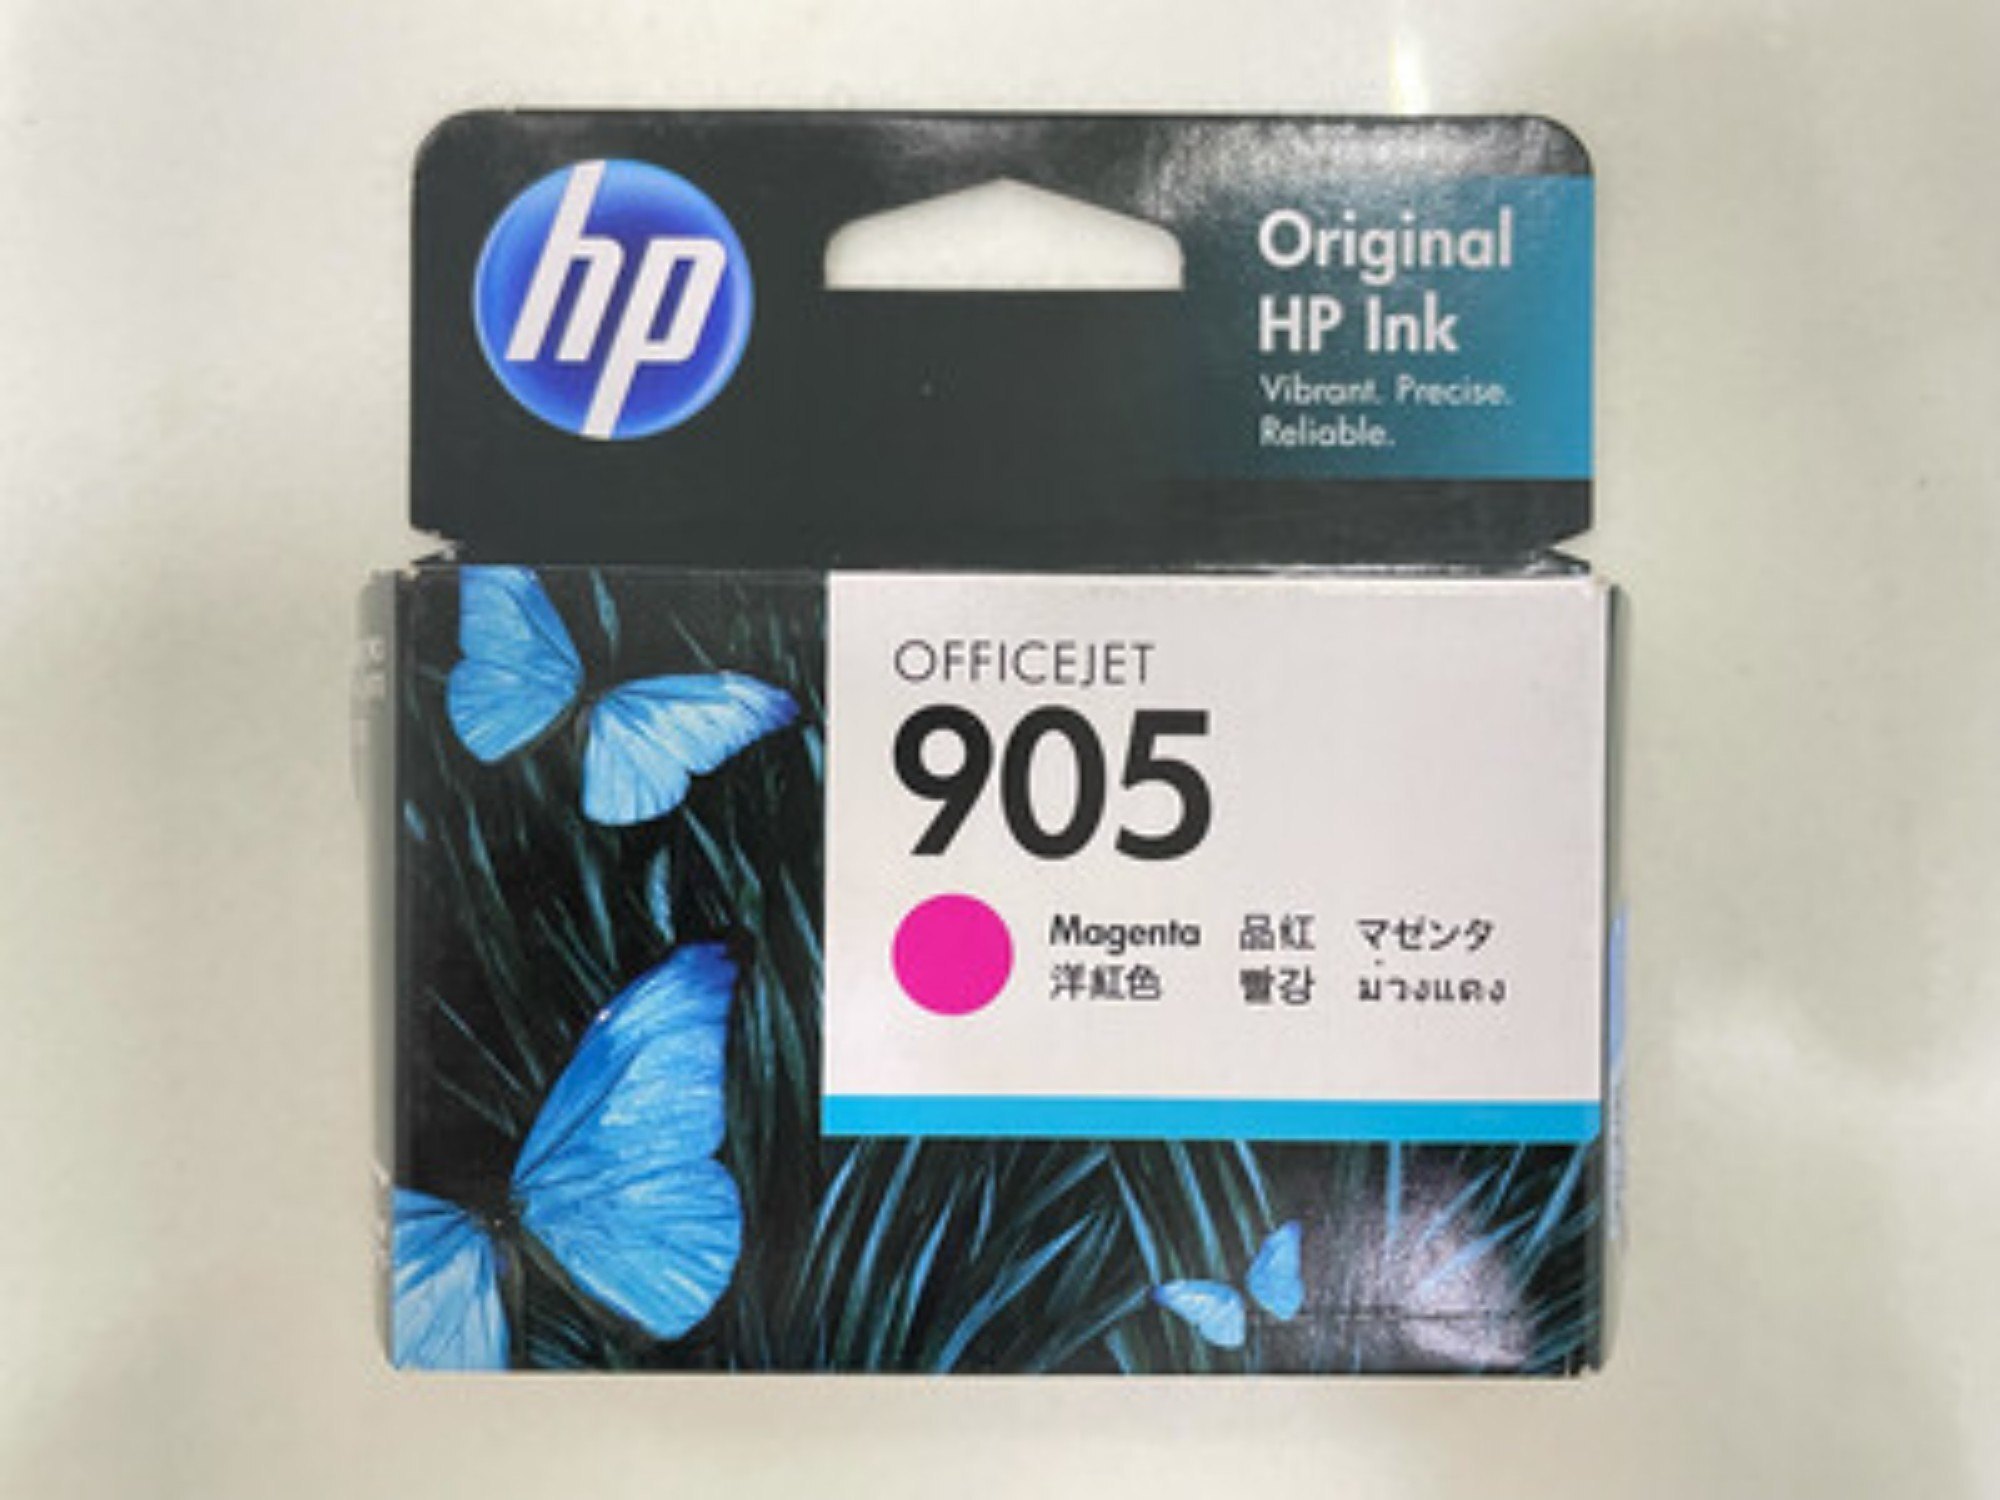 HP 905 Magenta Original Ink Cartridge